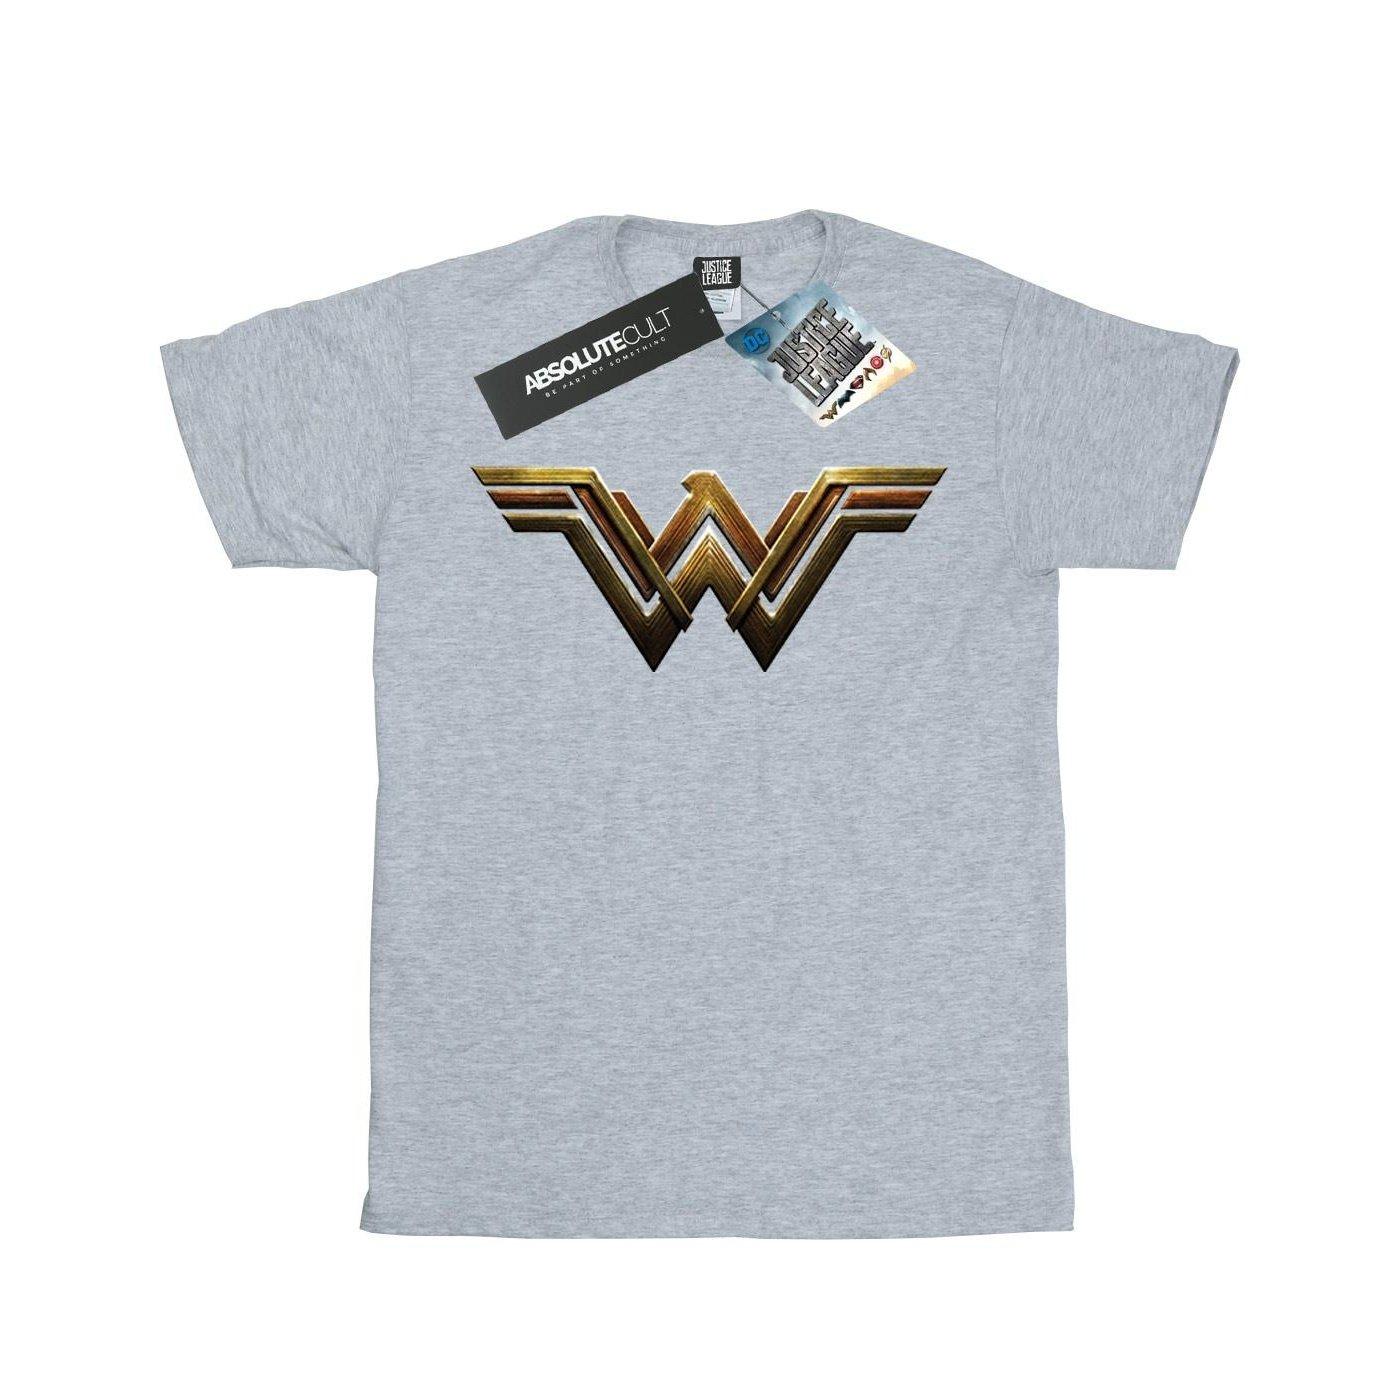 Tshirt Mädchen Grau 140/146 von Wonder Woman